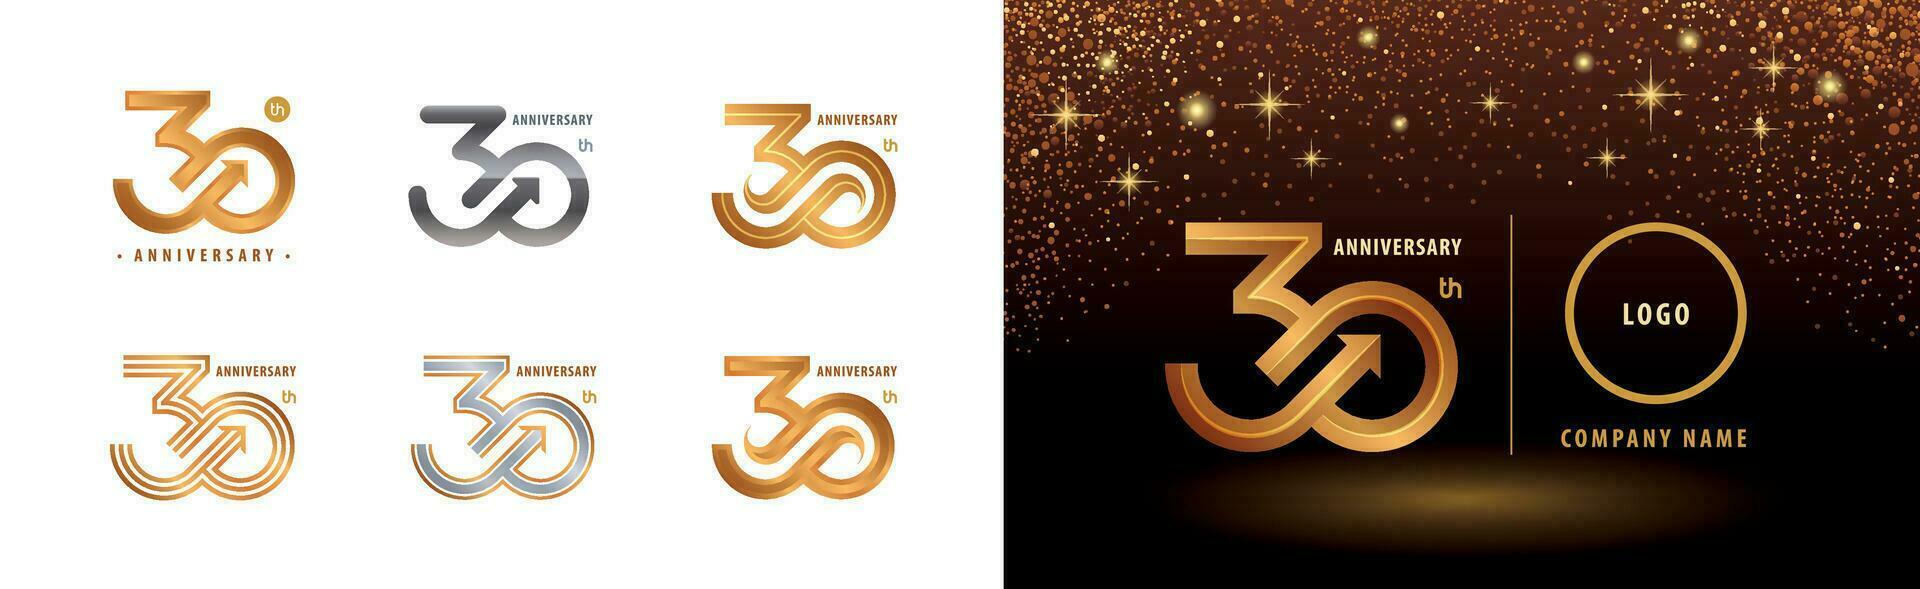 conjunto de 30 aniversario logotipo diseño, treinta años aniversario celebracion vector